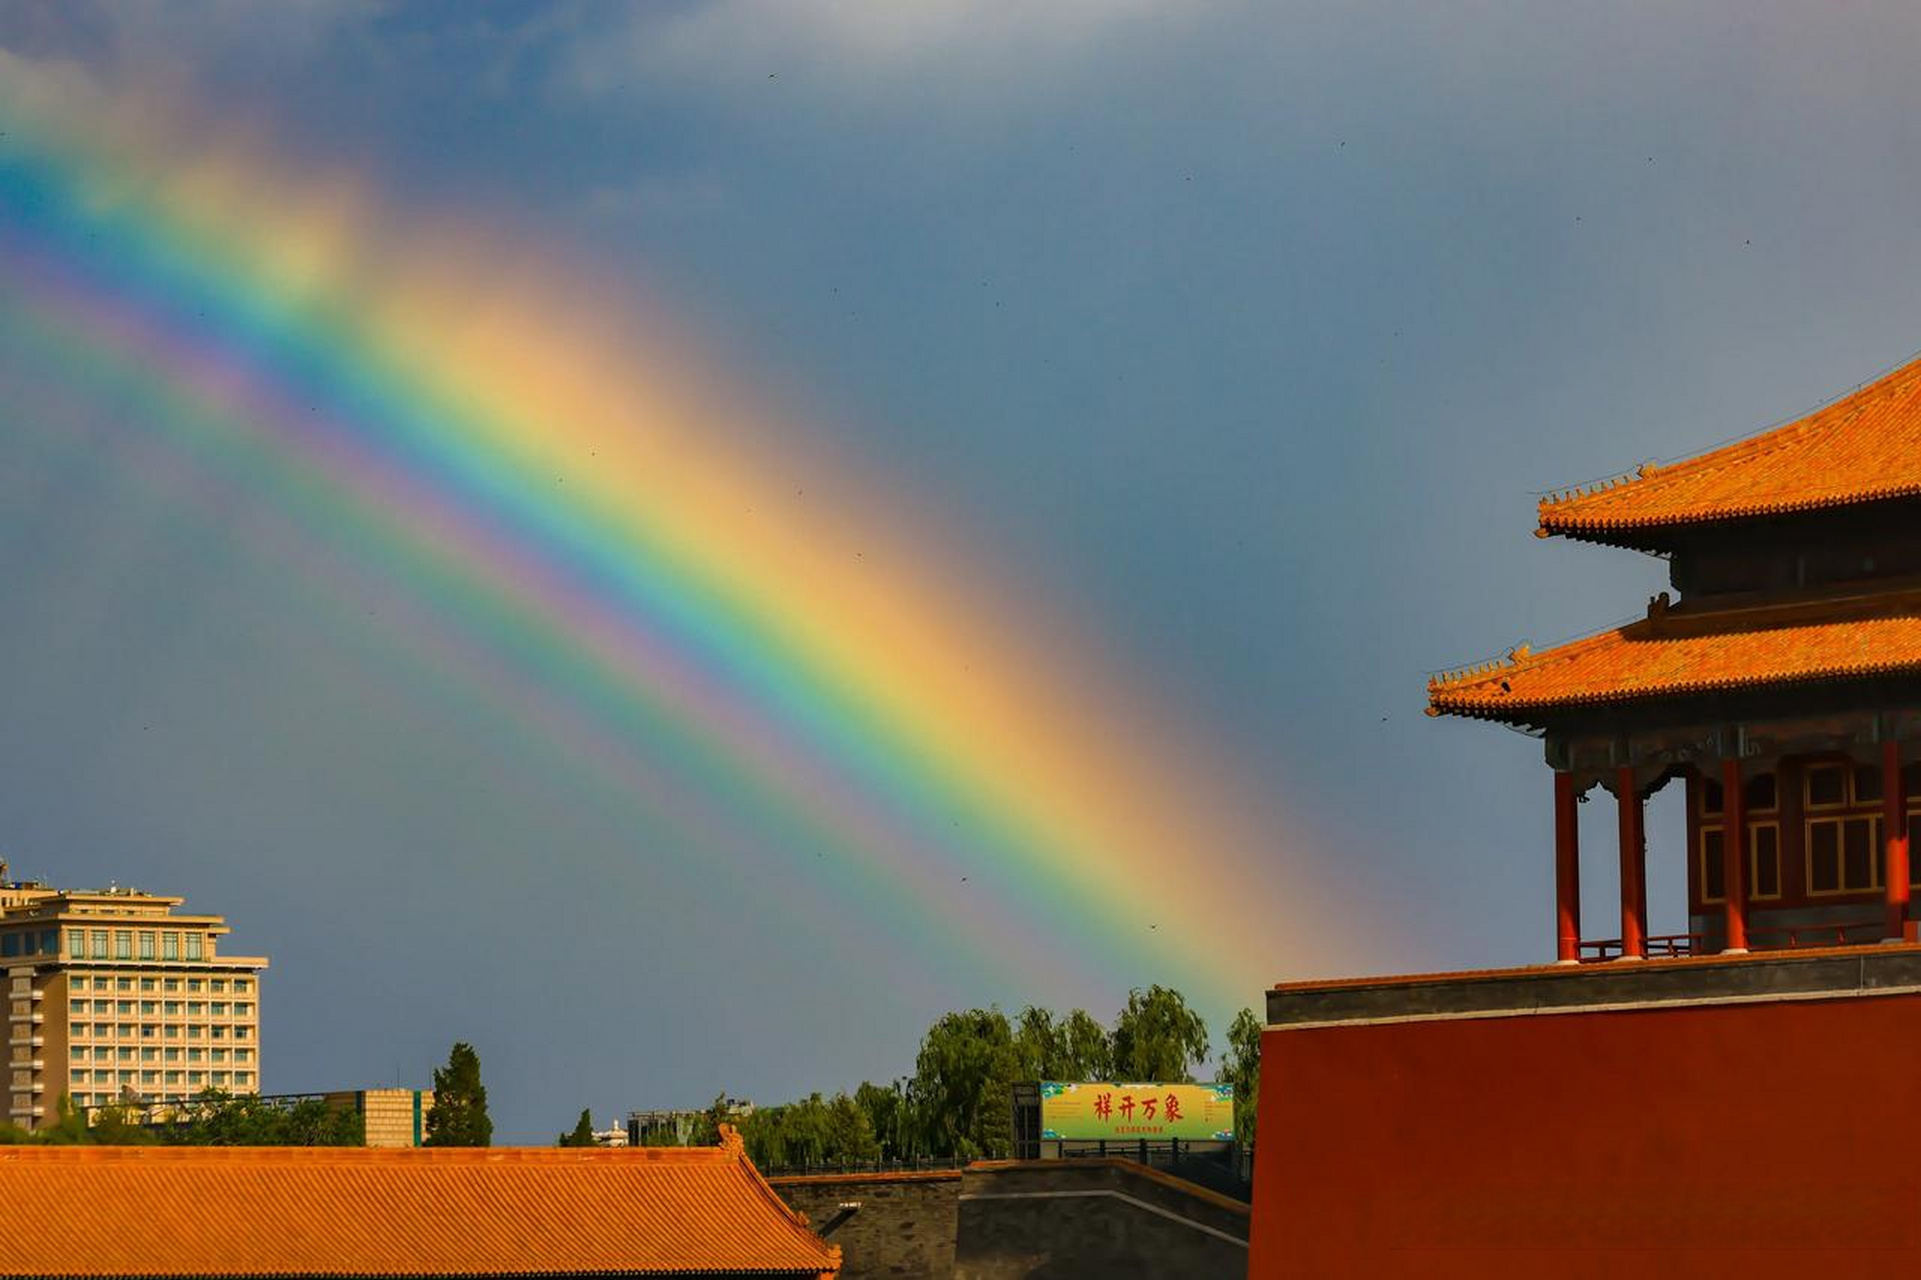 紫禁之巅 拍到了故宫的彩虹,助力北京中轴线申遗!